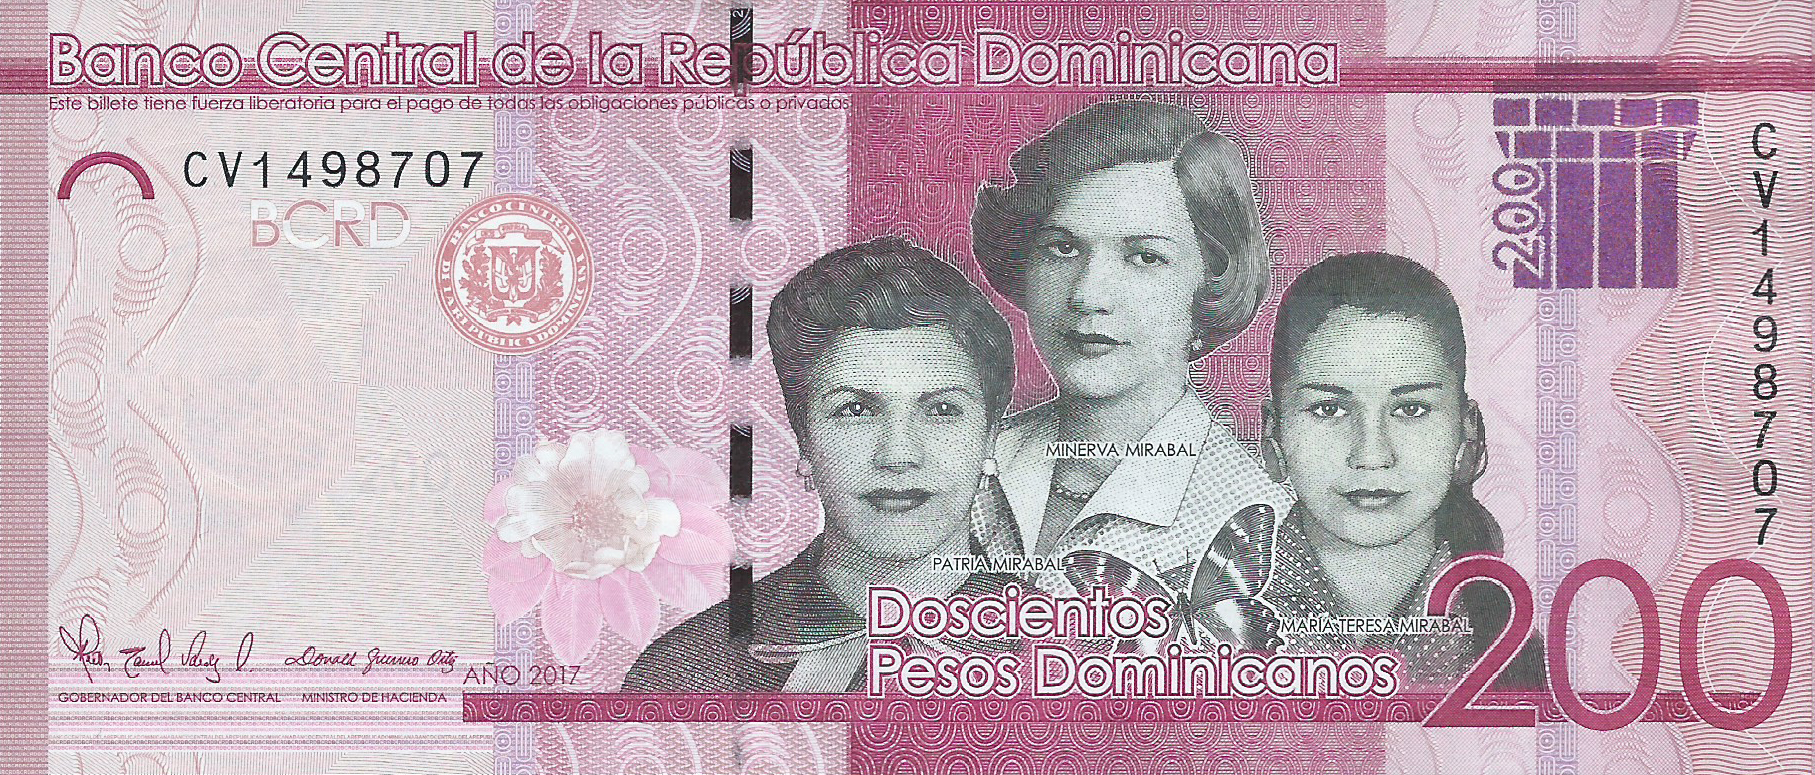 Dominican Republic New 200 Peso Domincano Note B729a Confirmed Banknotenews